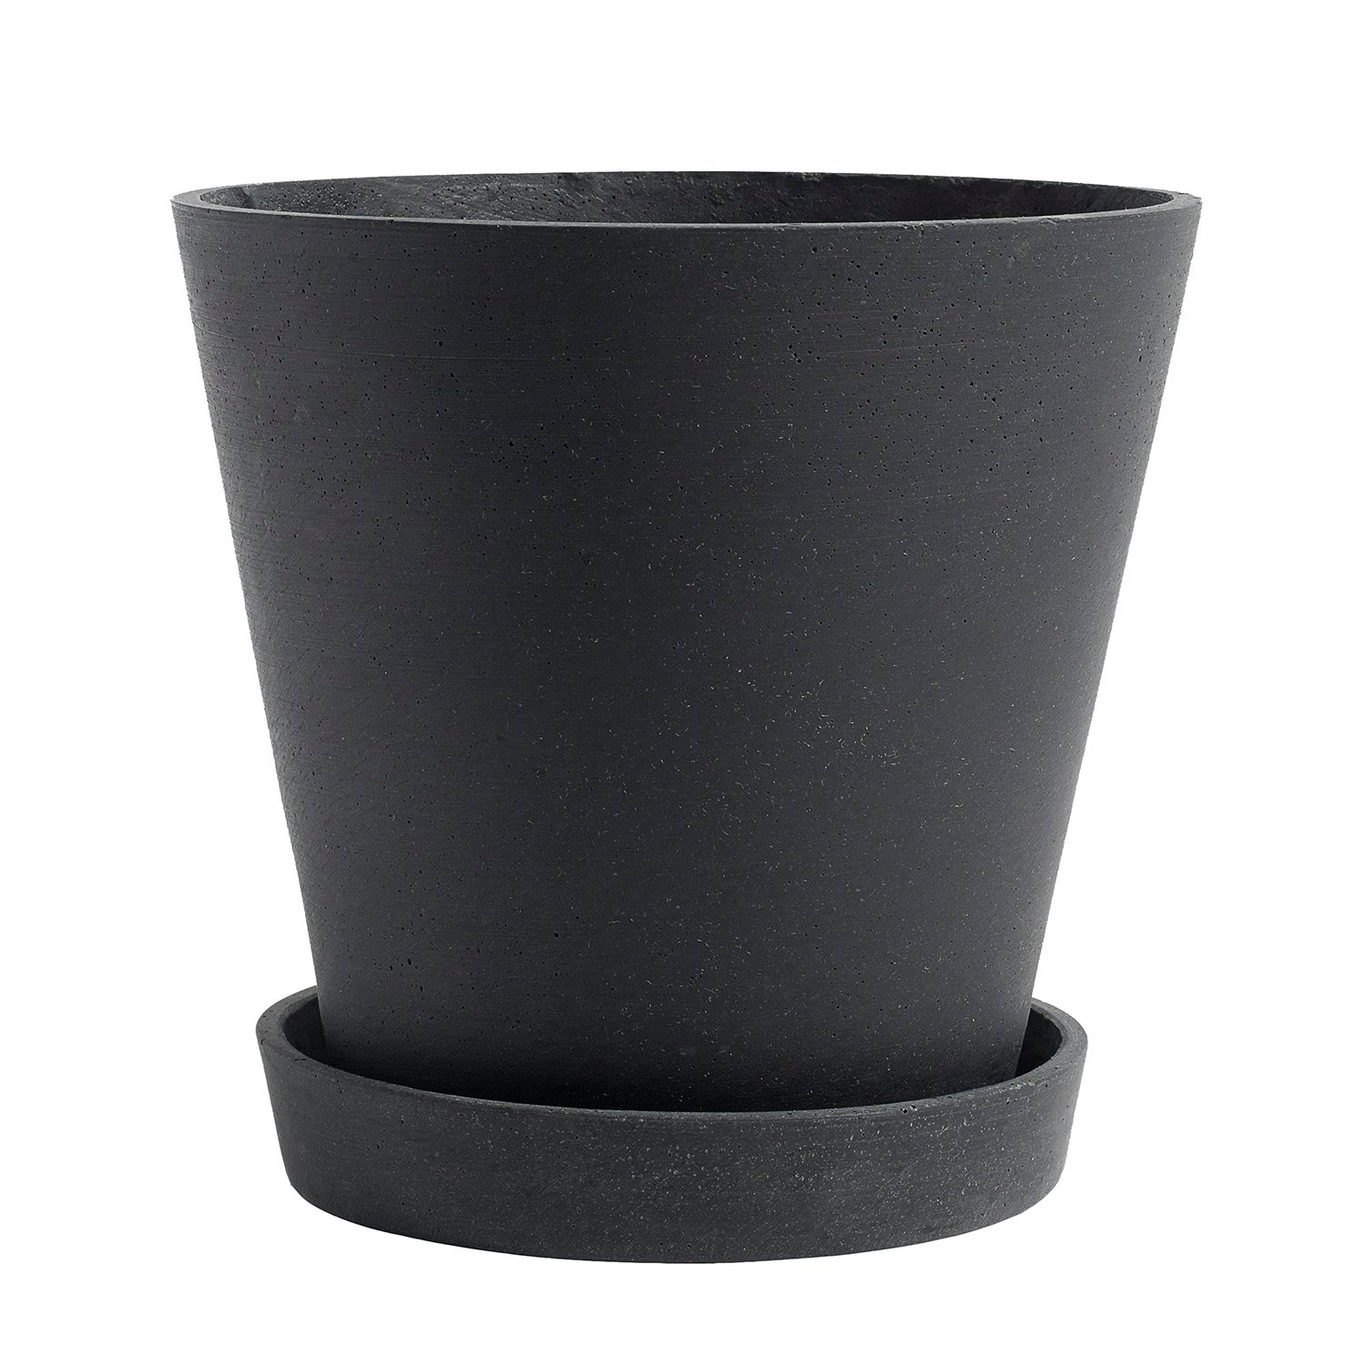 Flowerpot With Saucer Black, Ø21.5 cm XL